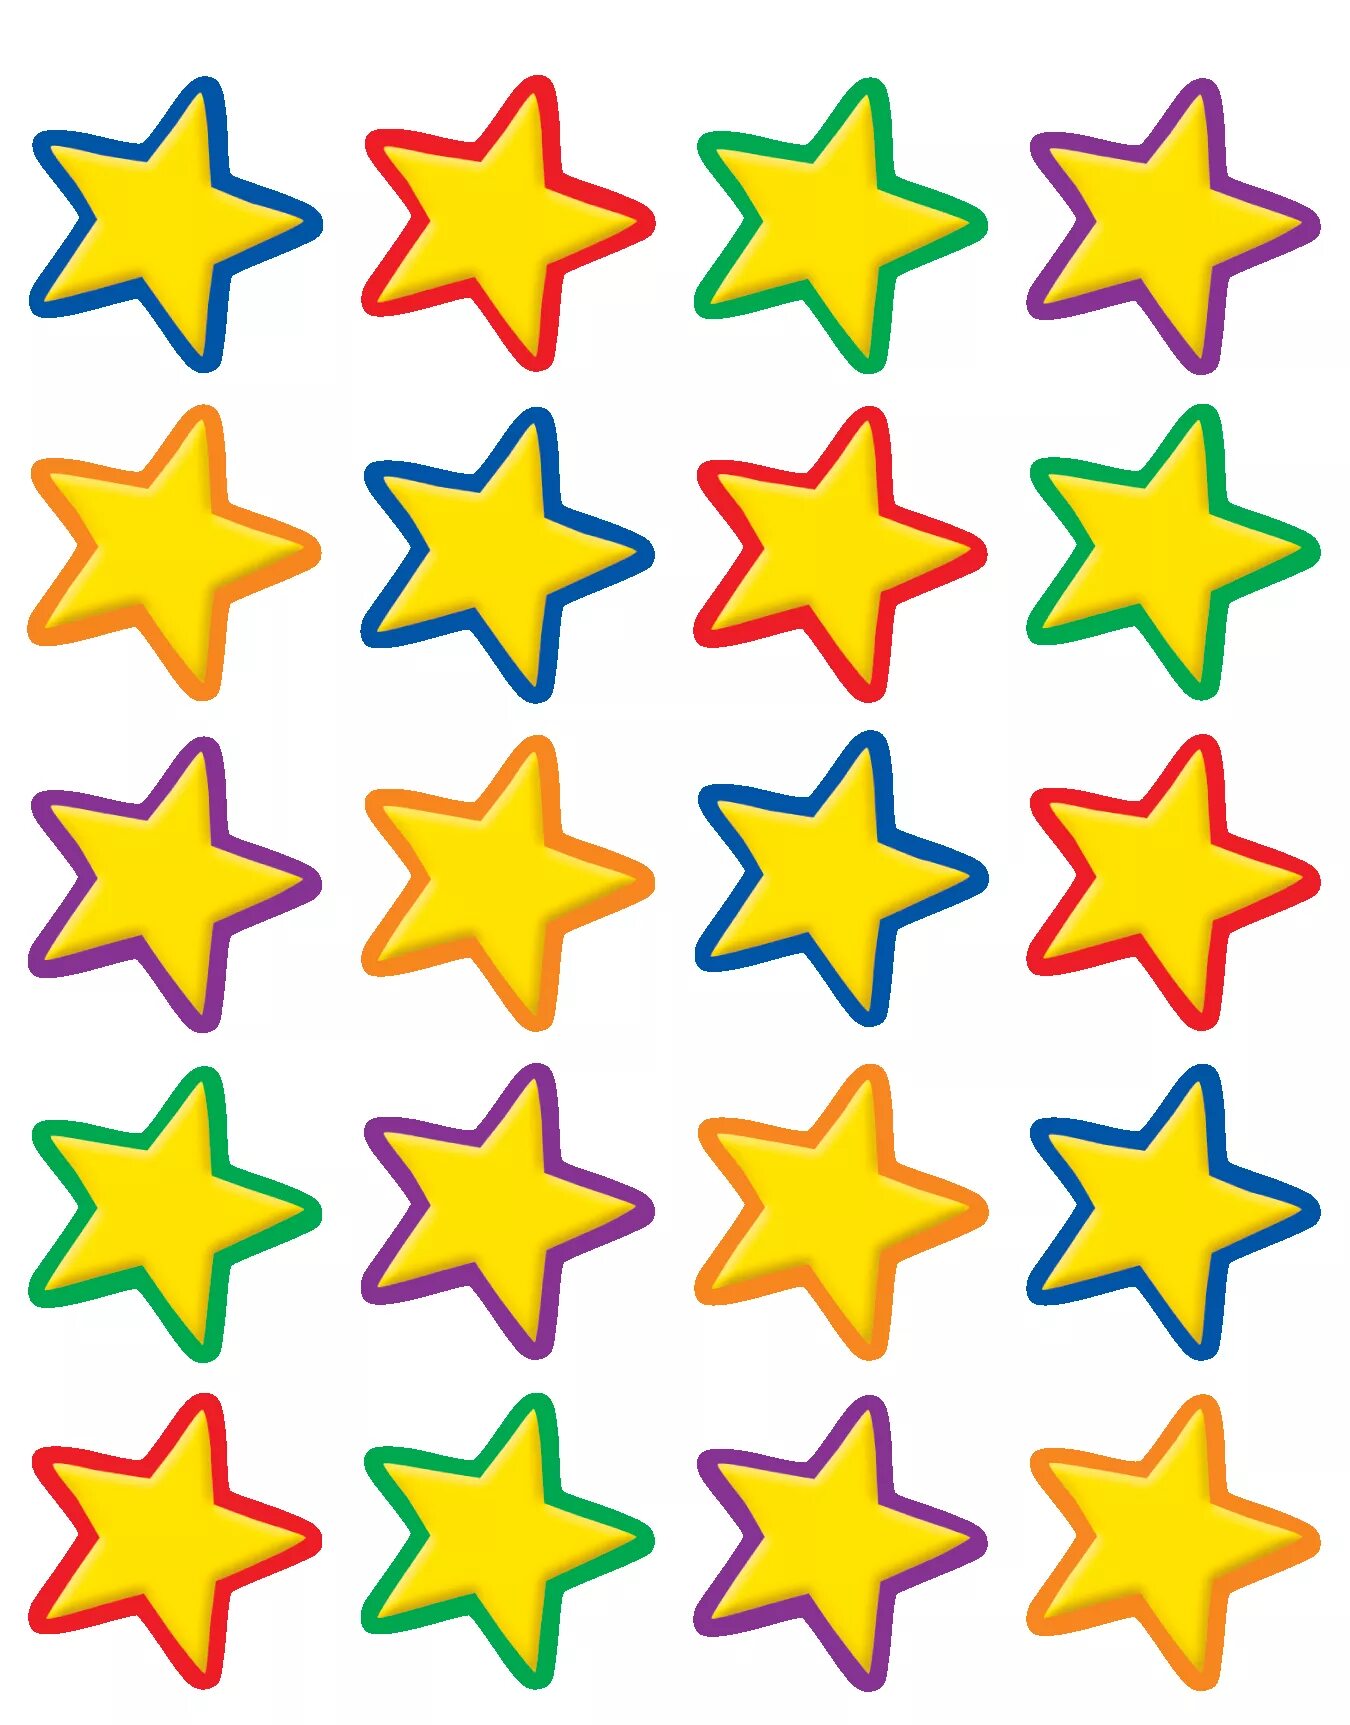 М маленькие звезды. Разноцветные звездочки. Маленькие звездочки. Розоцветные звездочки. Наклейка - звездочки.